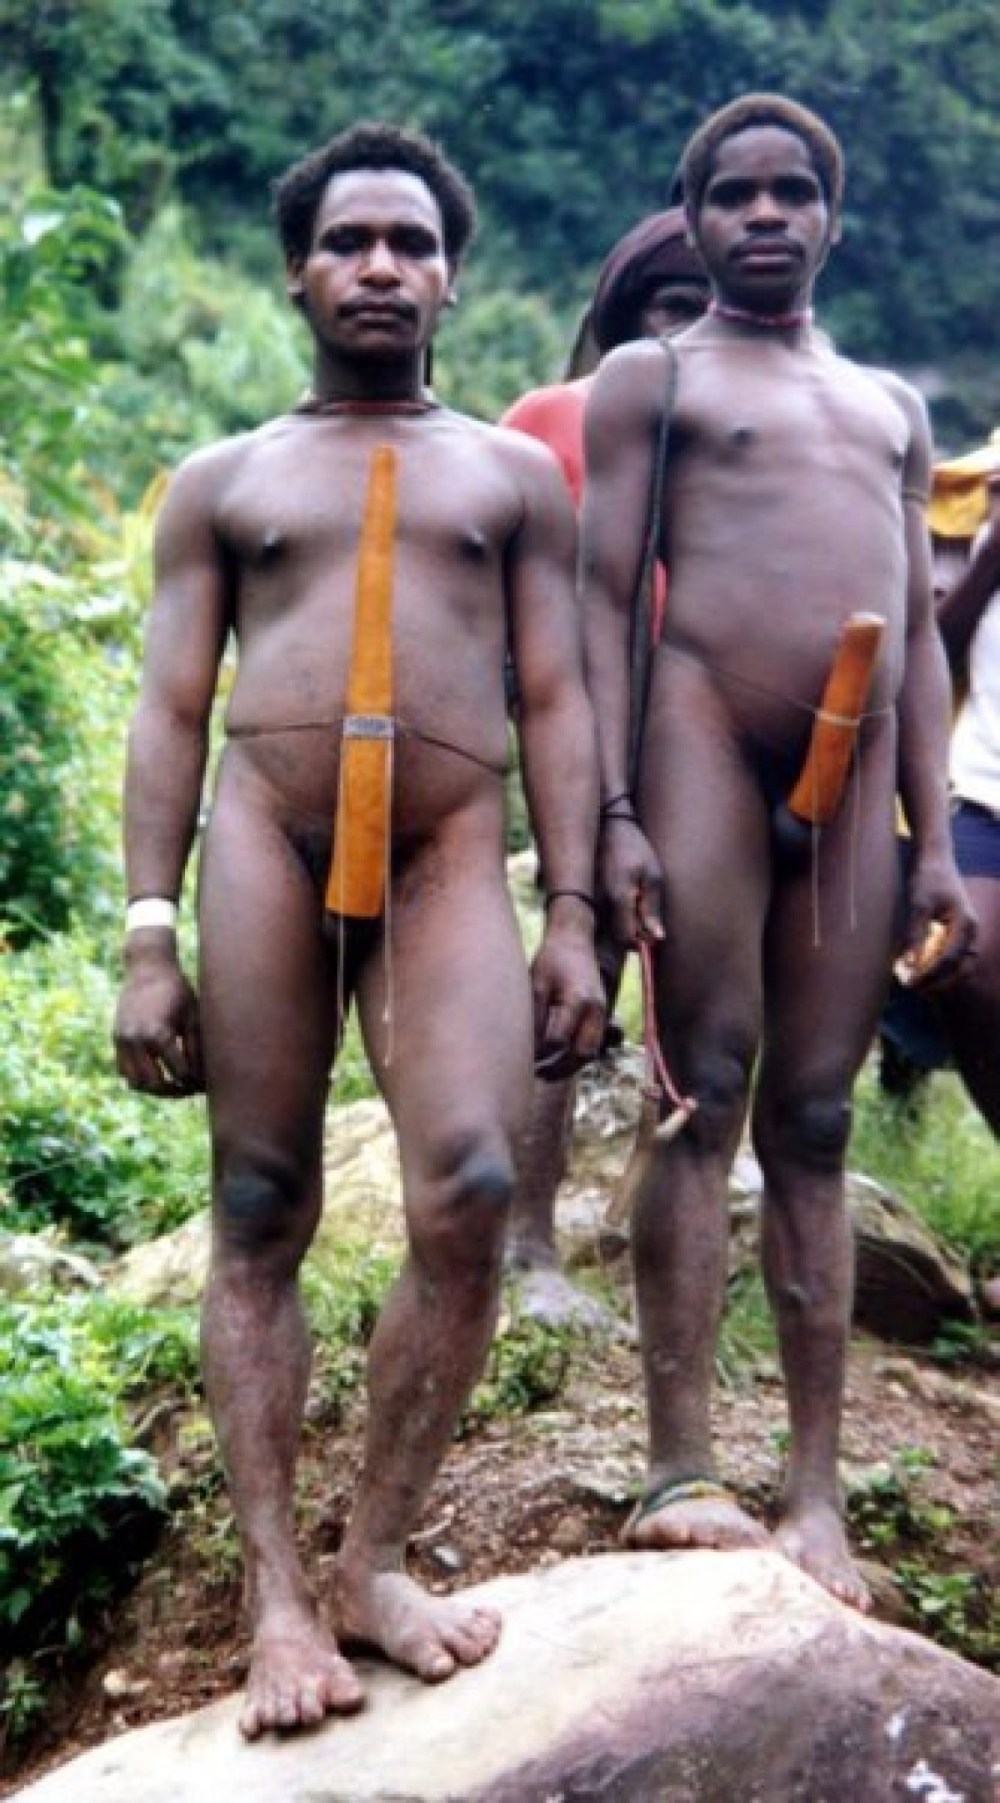 члены мужчин африканских племен фото 4